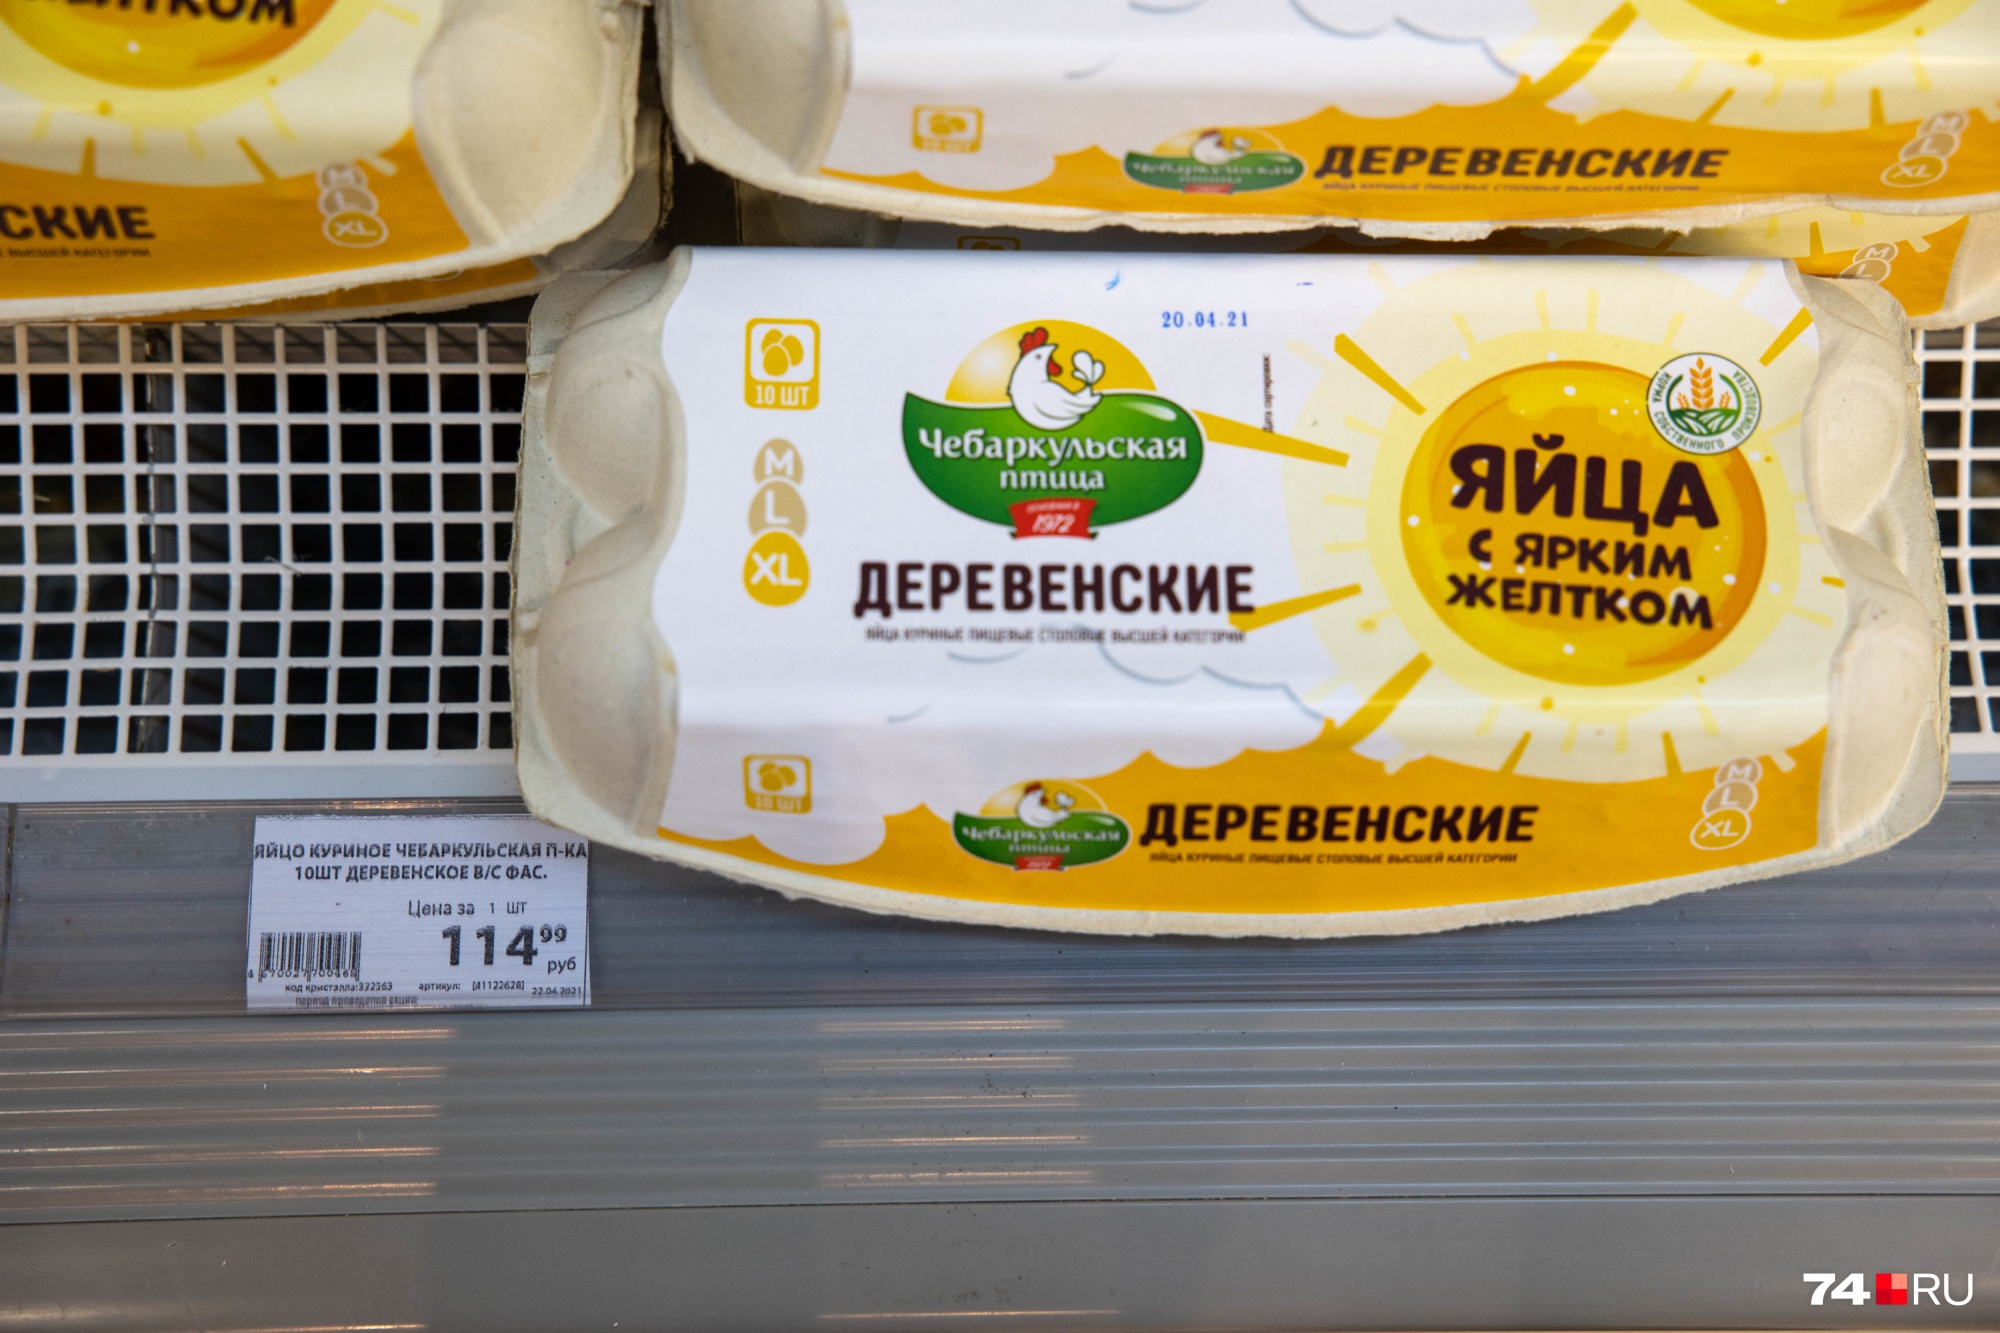 В супермаркете SPAR десять яиц категории ХL «Чебаркульской птицы» стоят 114,99 рубля